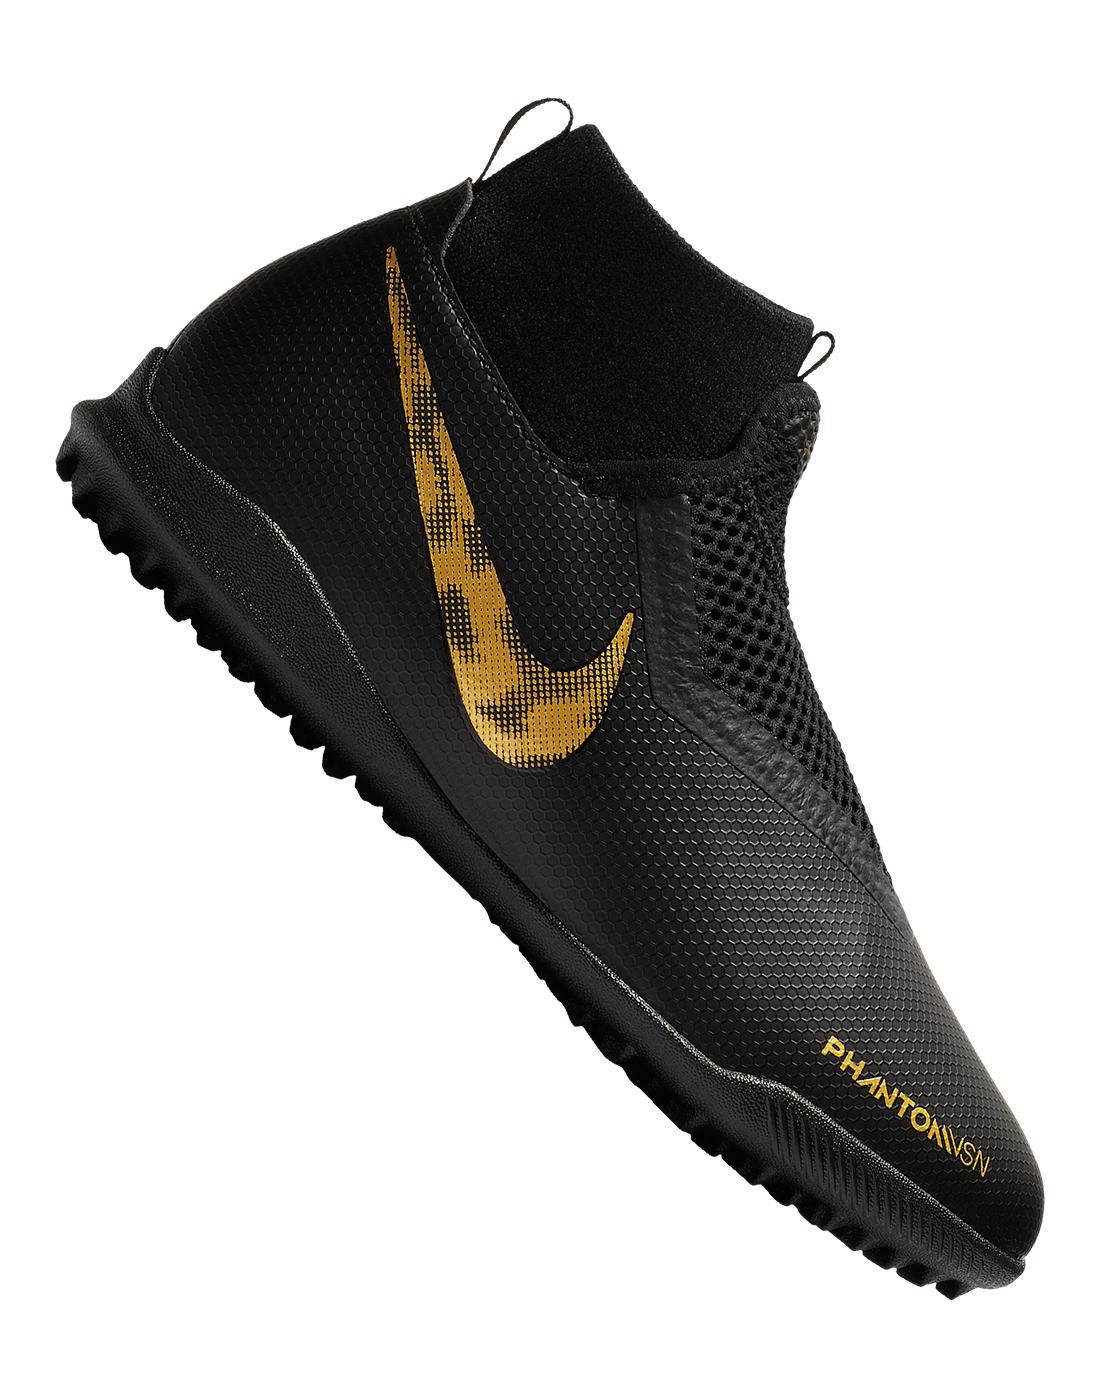 Nike Phantom VSN Shadow Pro DF AG PRO Mens Boots